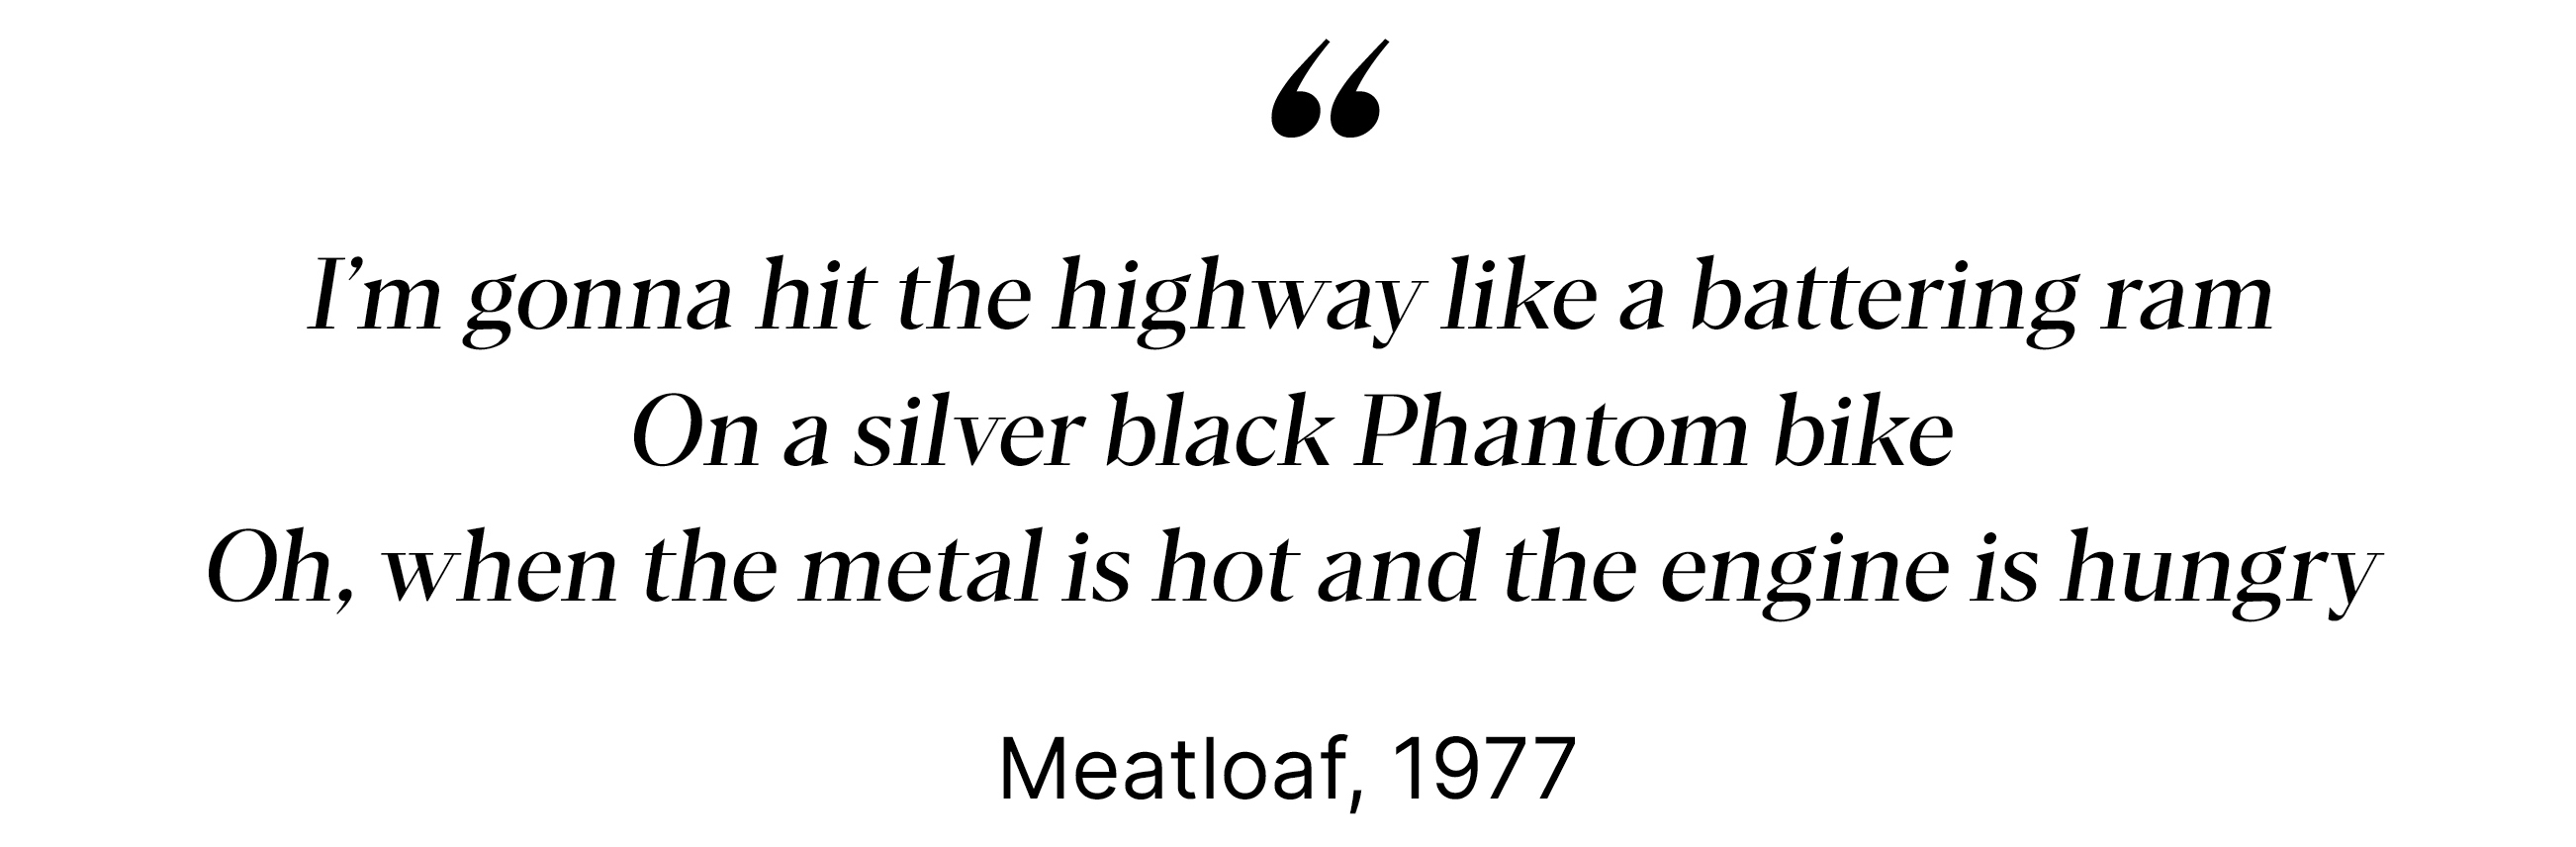 Meathloaf, 1977